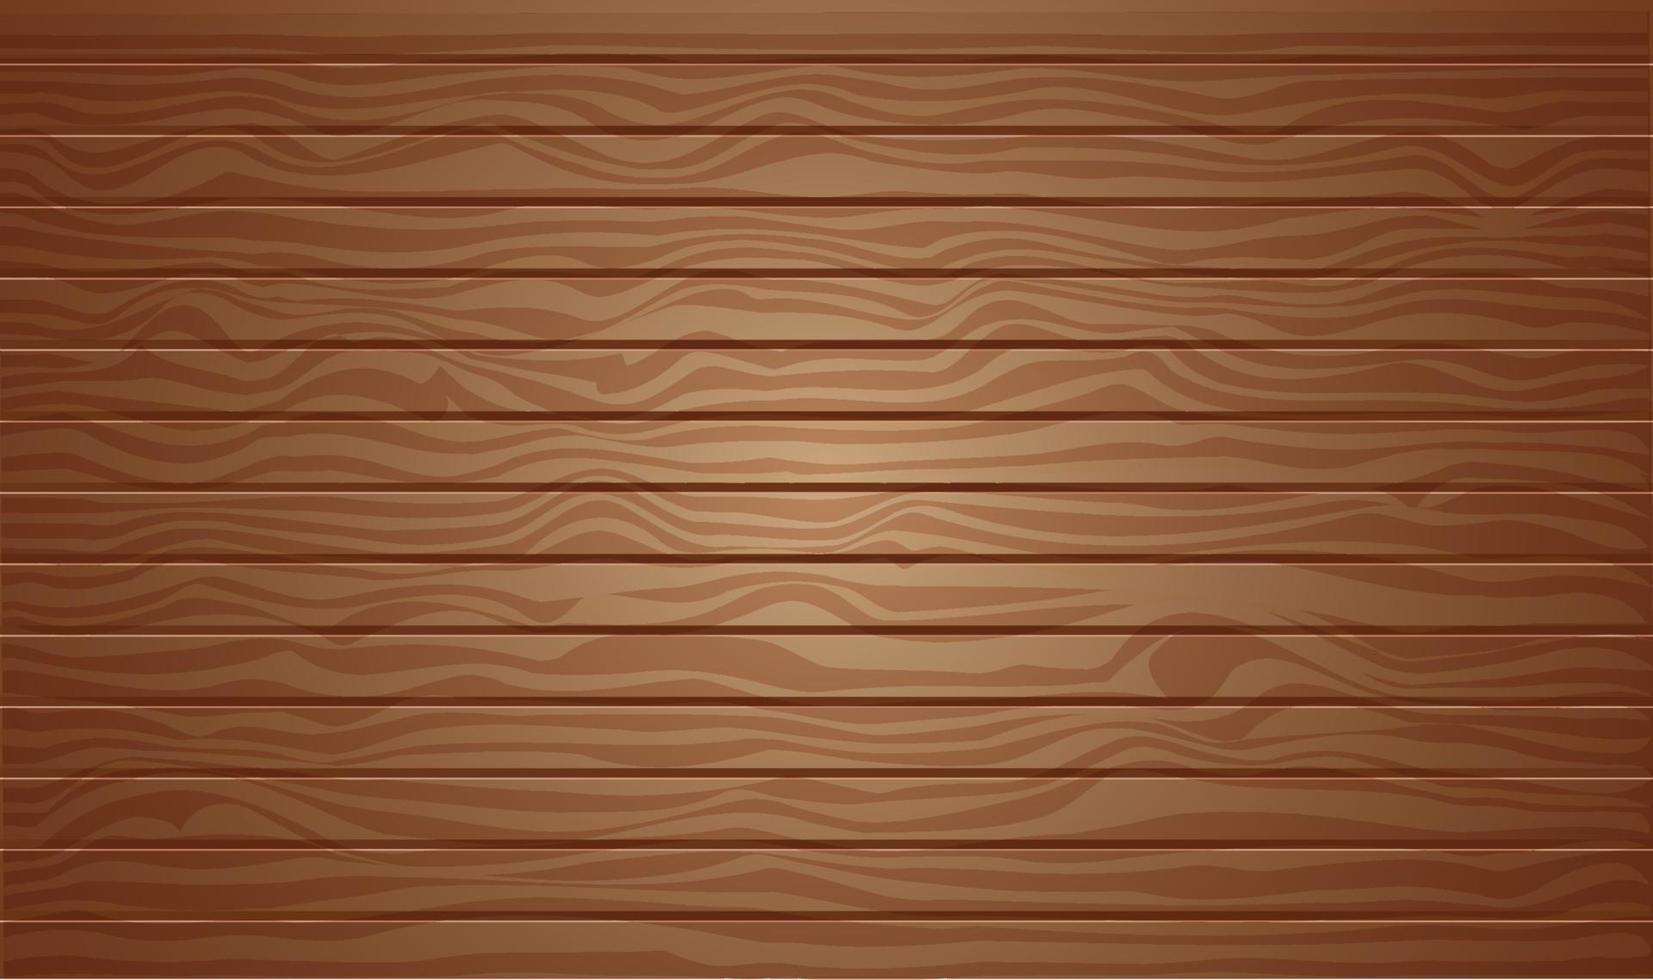 Fondo de textura de madera marrón con vista superior de ilustración vectorial 3d vector